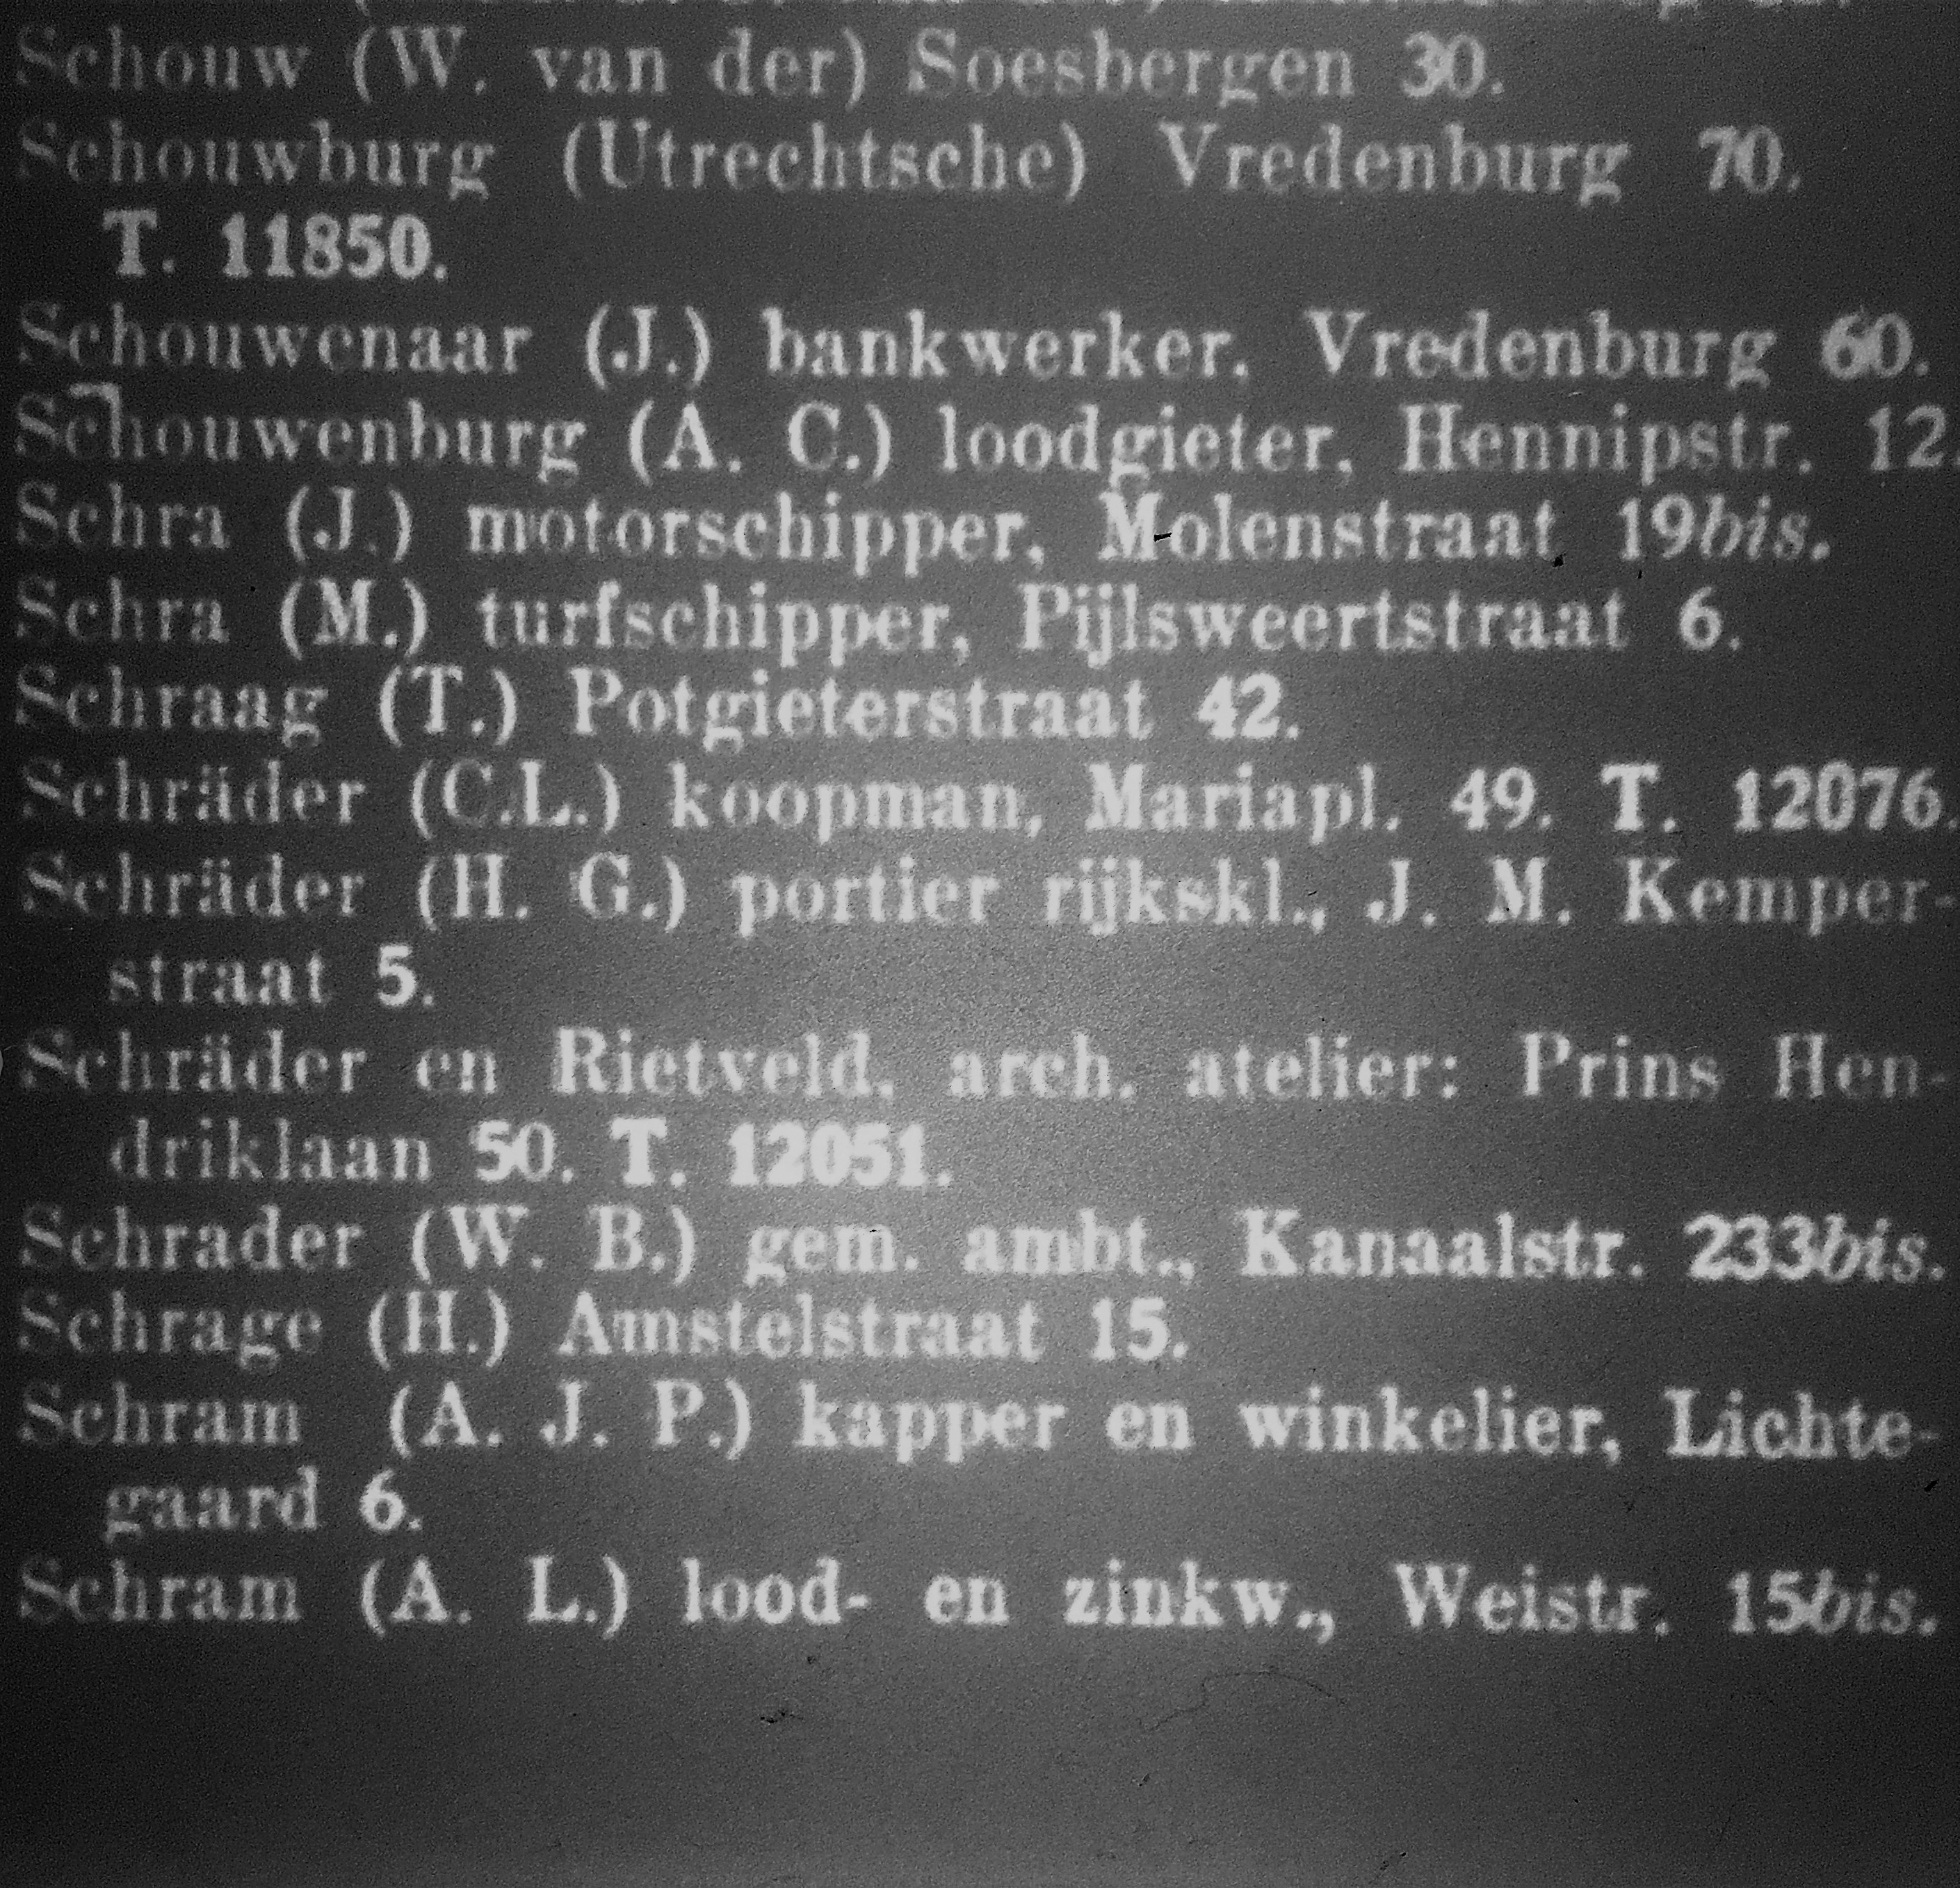 met o.a. de tekst: ‘Schräder en Rietveld. arch. atelier: Prins Hendriklaan 50. T. 12051’ 